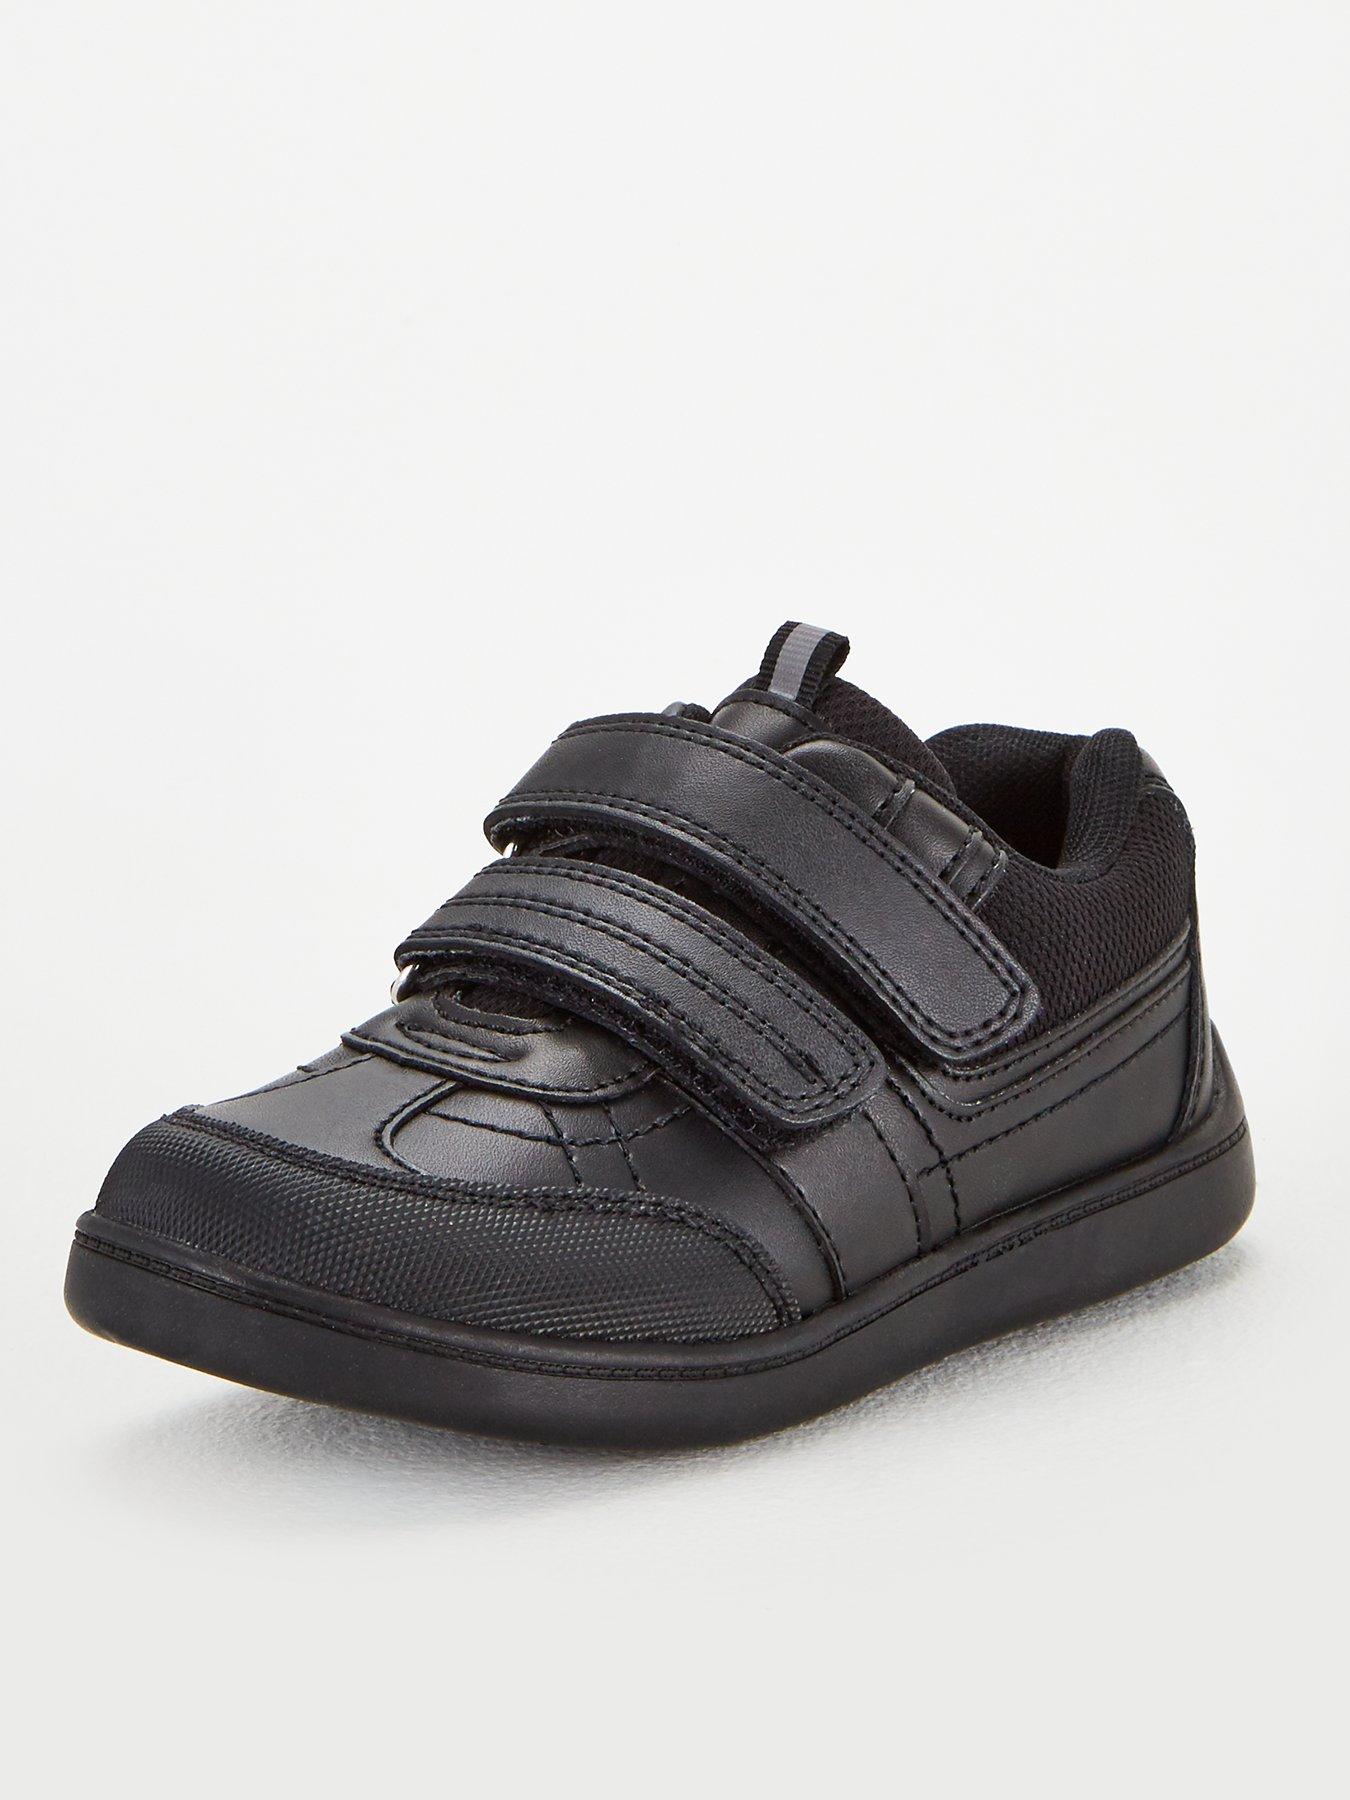 boys black strap shoes